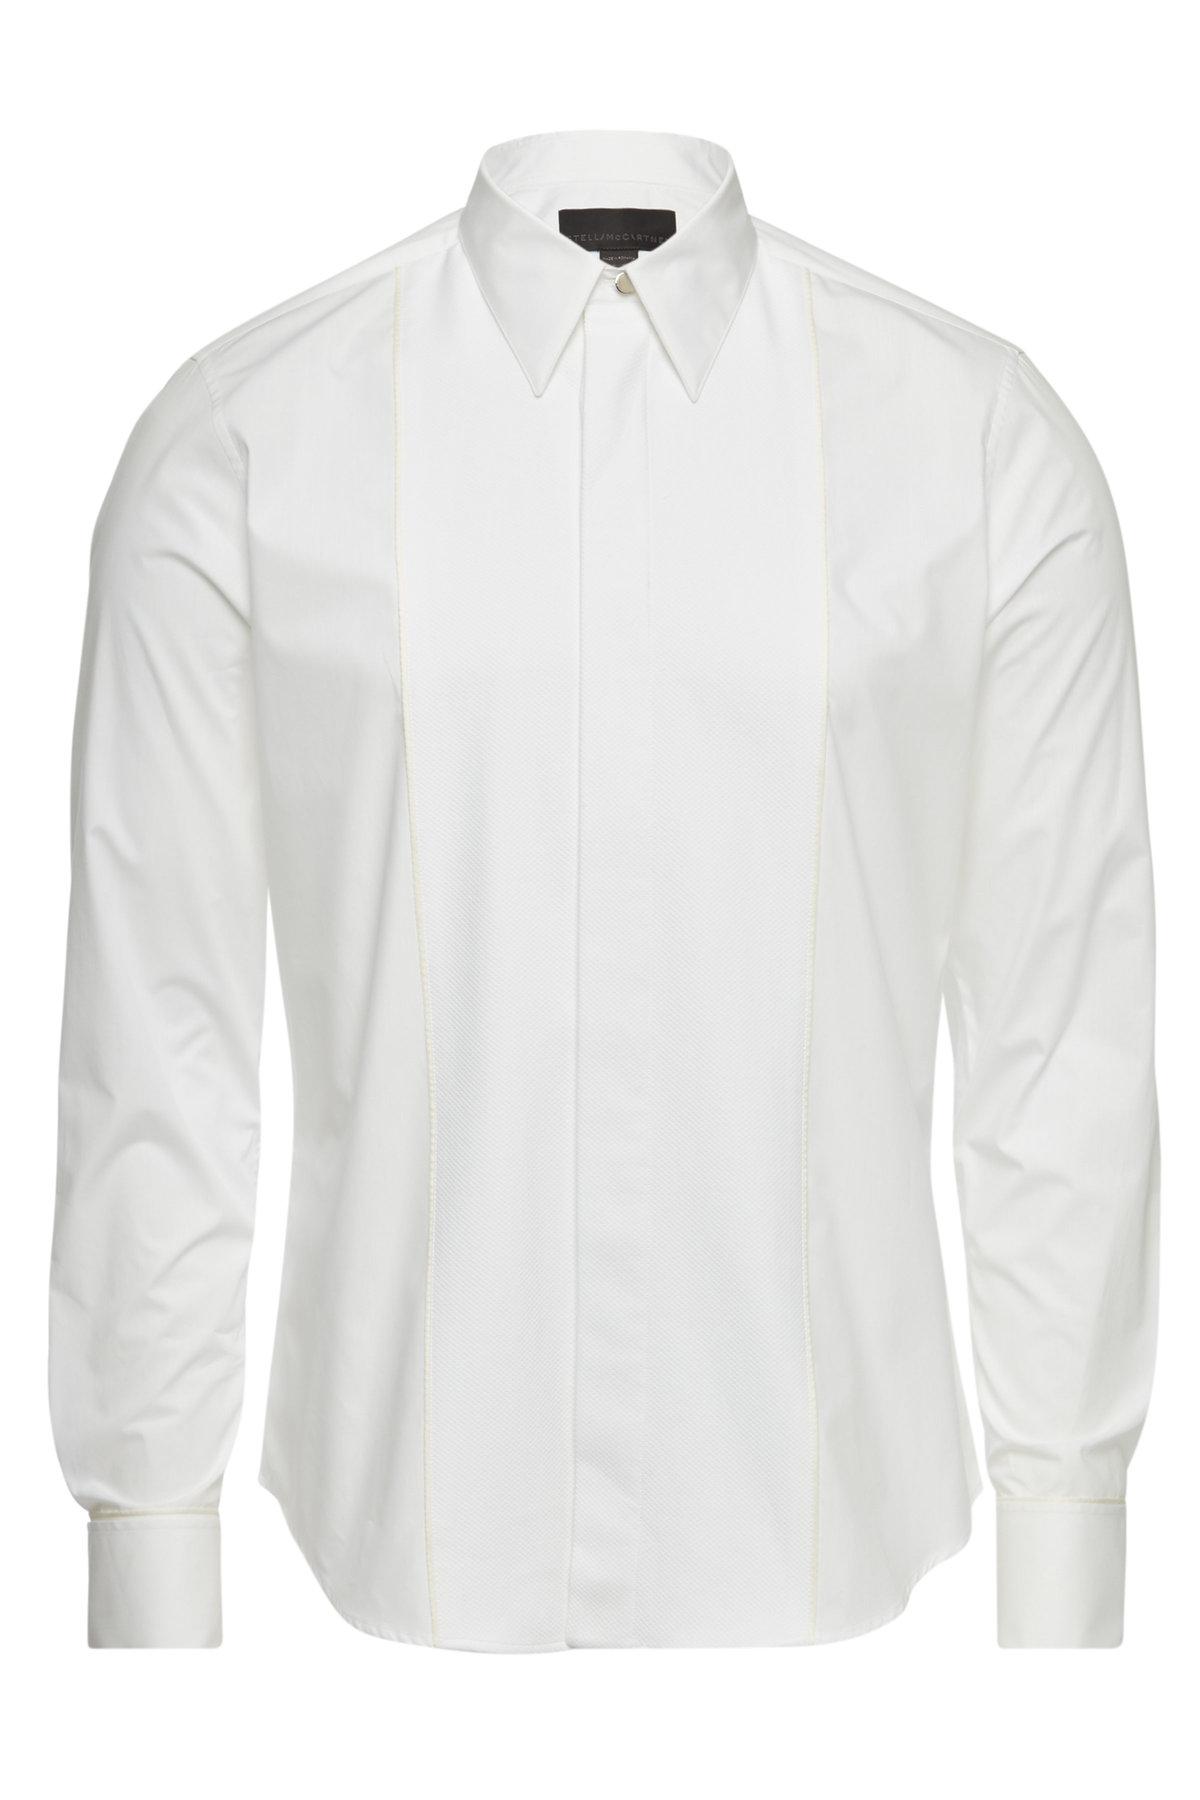 Stella McCartney Simon Cotton Shirt in White for Men - Lyst